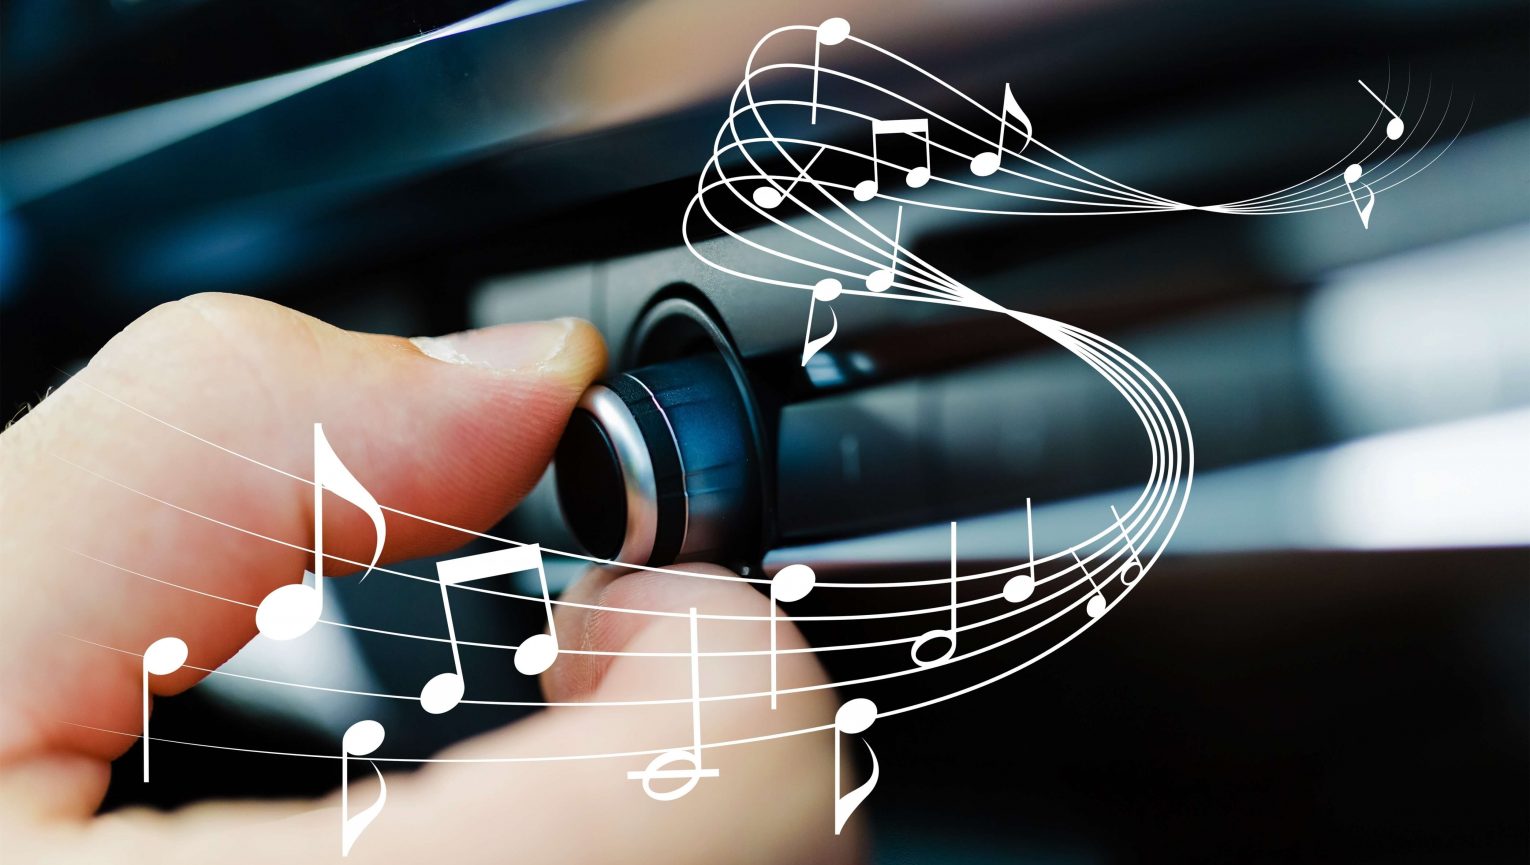 Muzyka łagodzi obyczaje, ale czy zawsze? Sprawdź, jak dźwięki wpływają na kierowców.